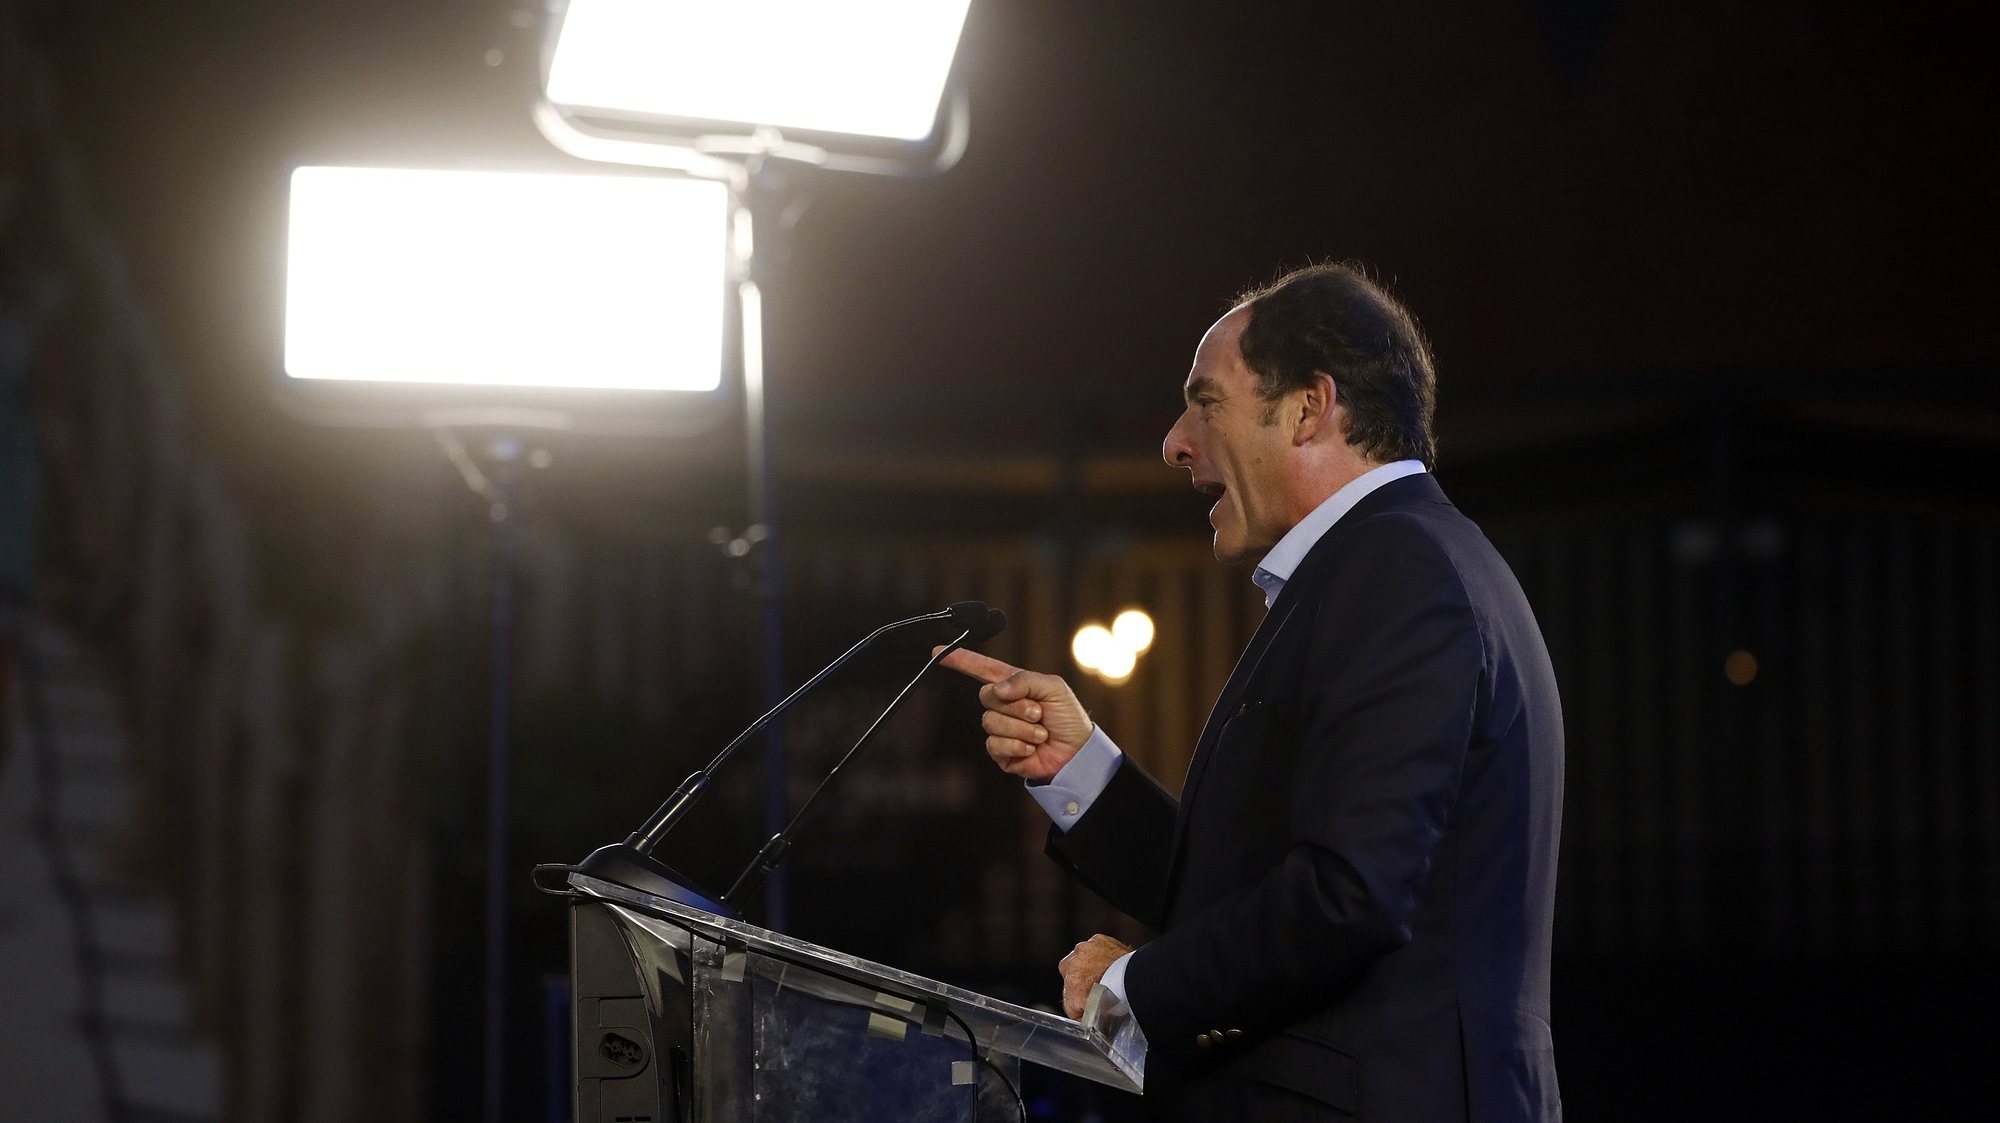 O antigo presidente do CDS-PP, Paulo Portas, intervém durante um jantar comício, no âmbito da campanha para as eleições europeias 2019, em Cascais, 21 de maio de 2019. ANTÓNIO PEDRO SANTOS/LUSA